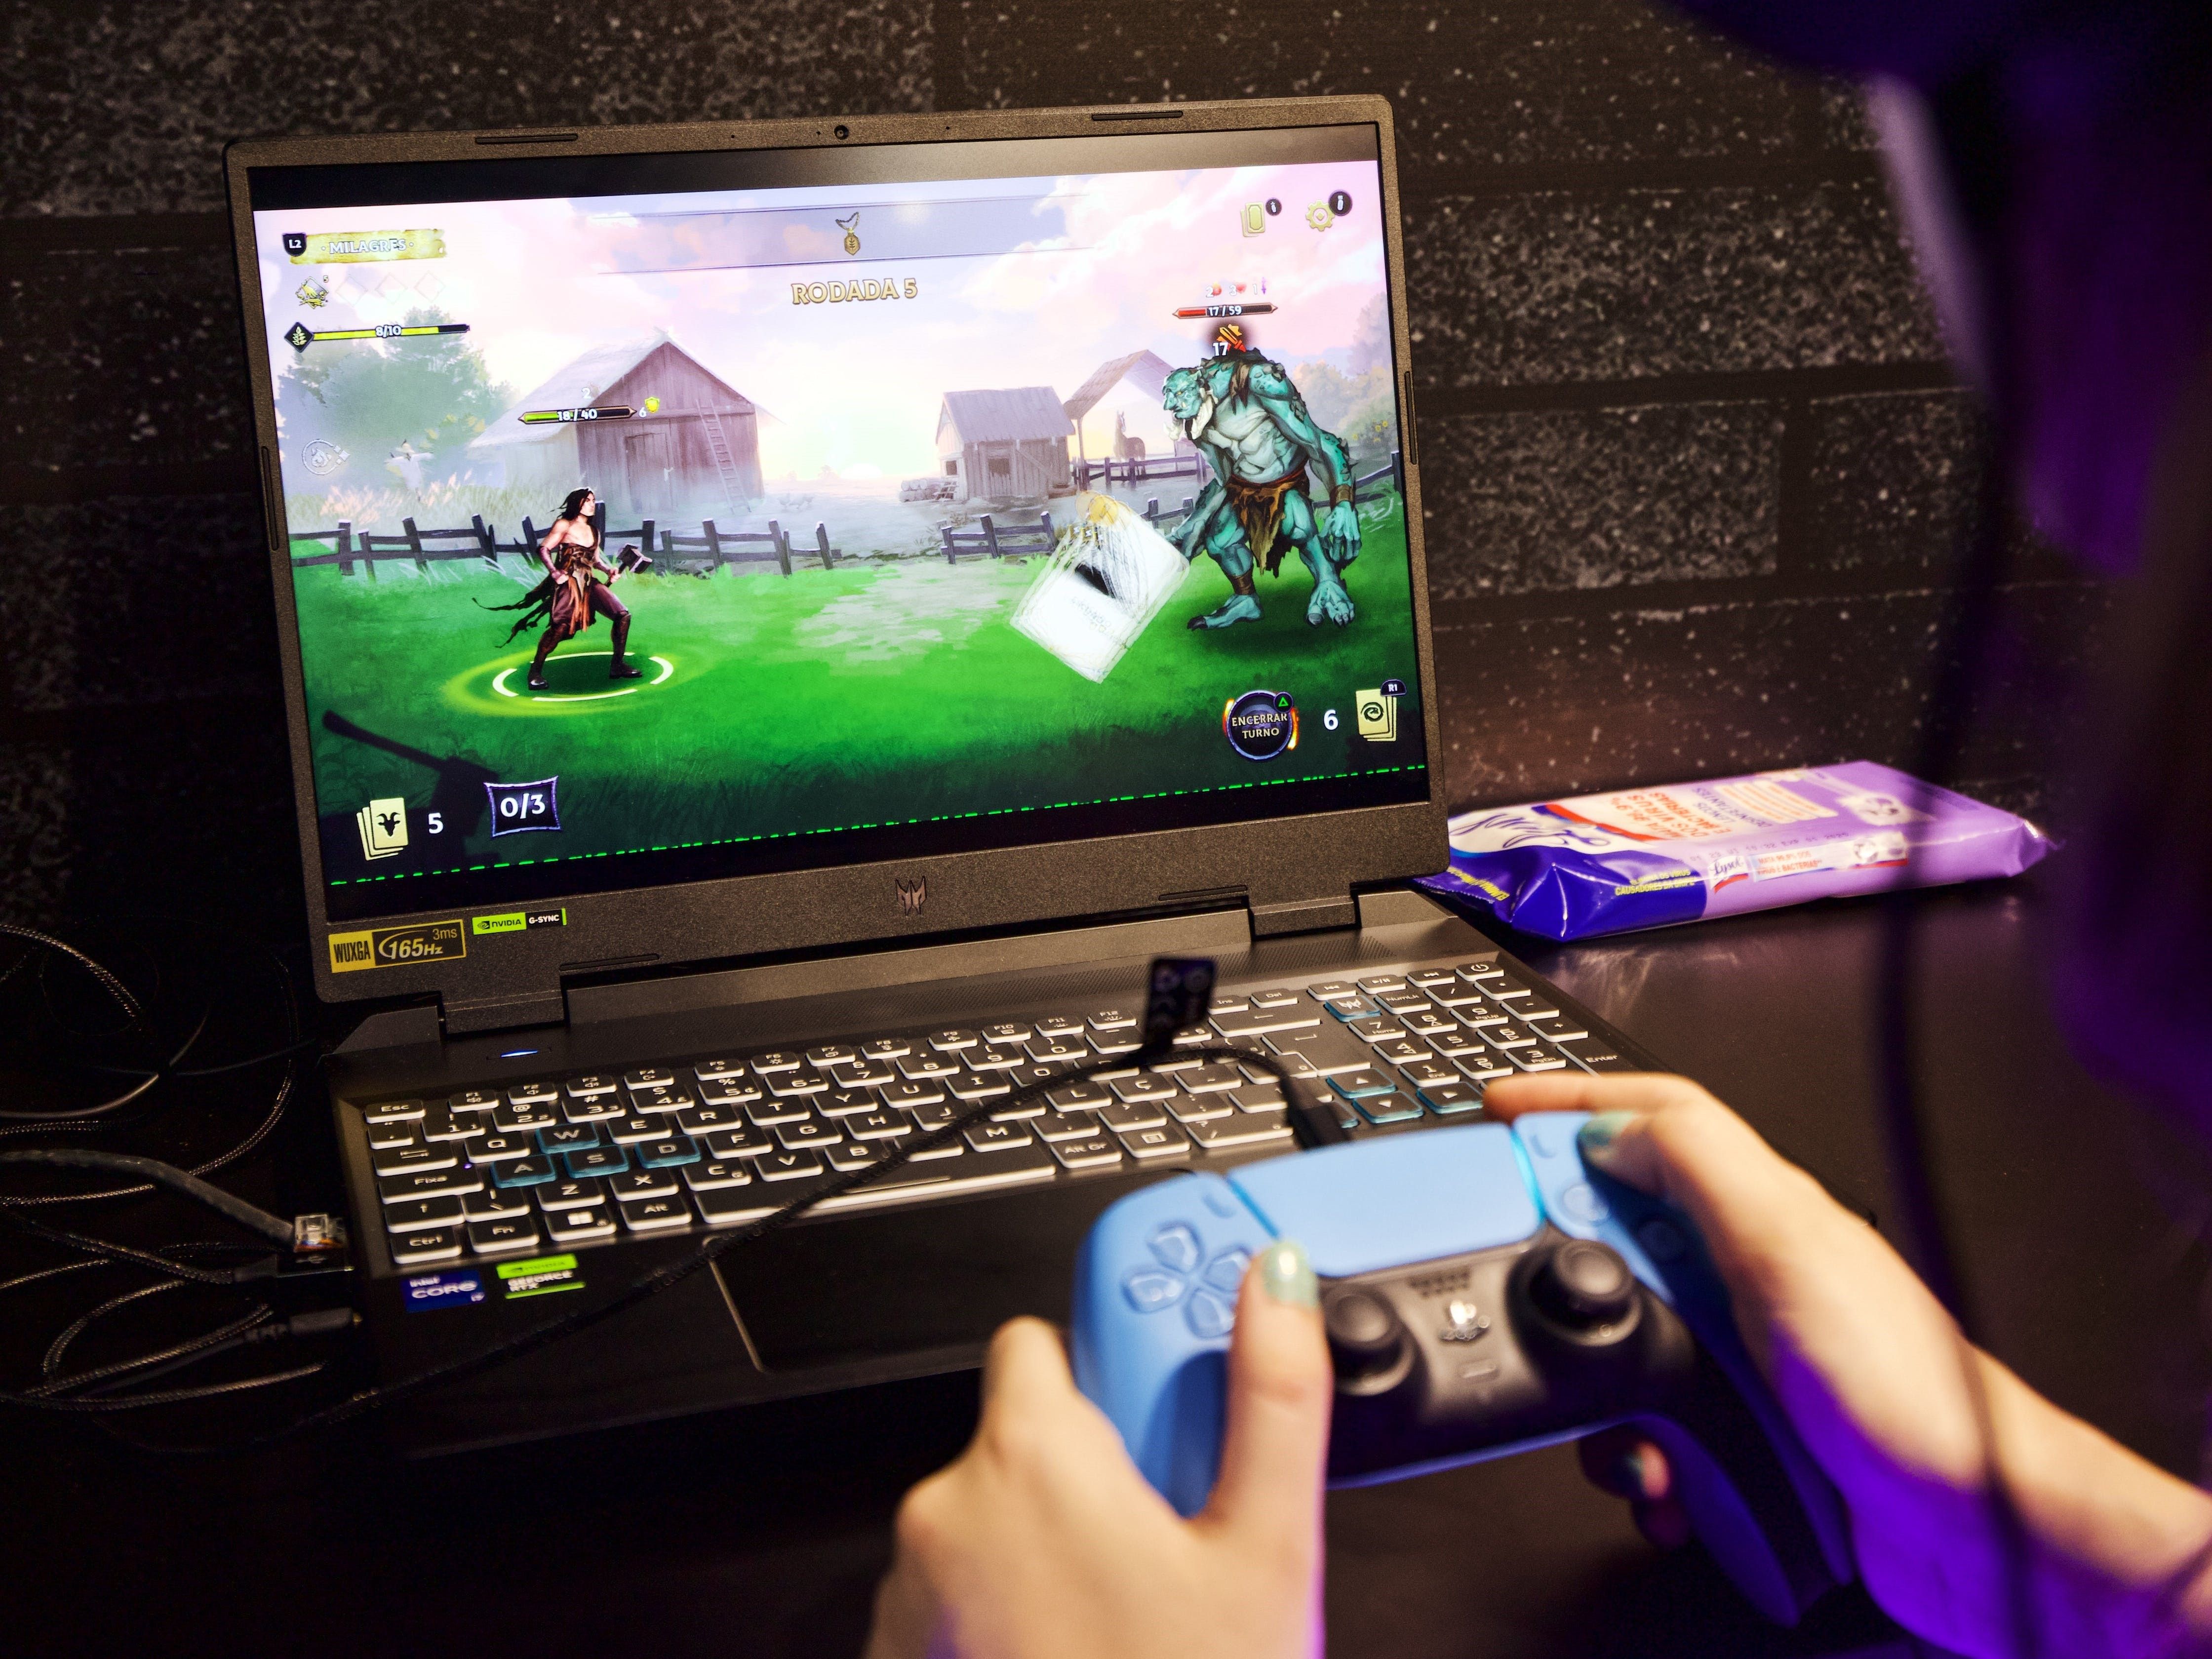 человек, держащий контроллер PlayStation во время игры в видеоигру на портативном компьютере